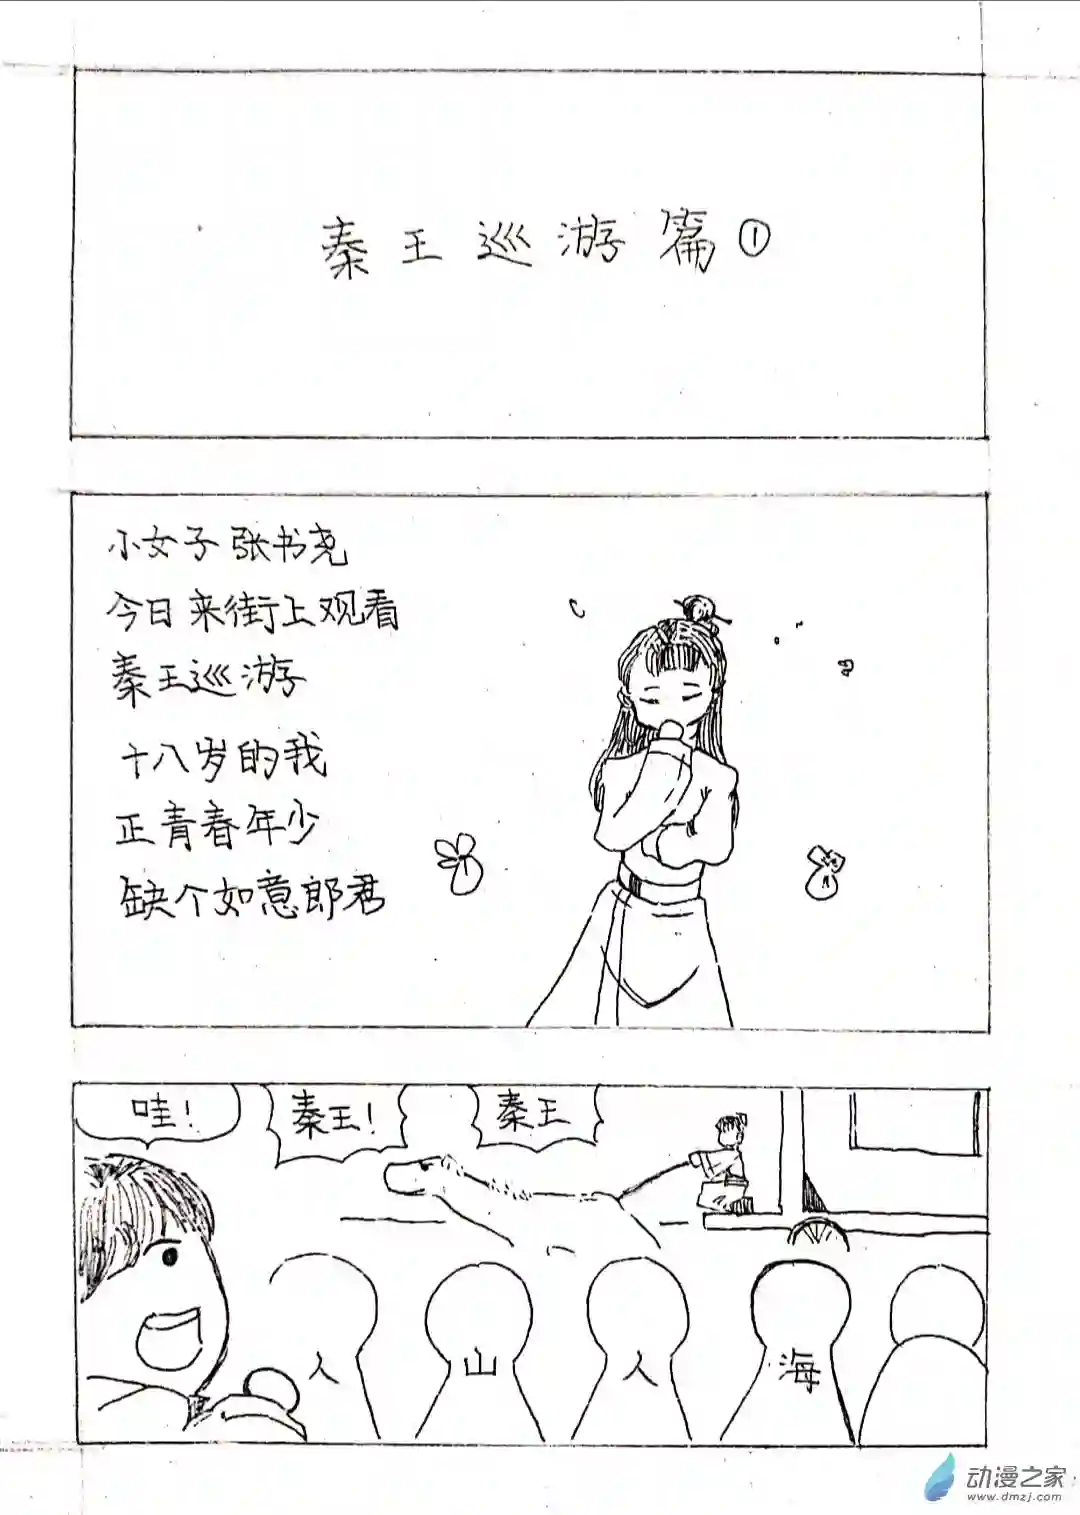 日刊漫画01 秦王出游篇一